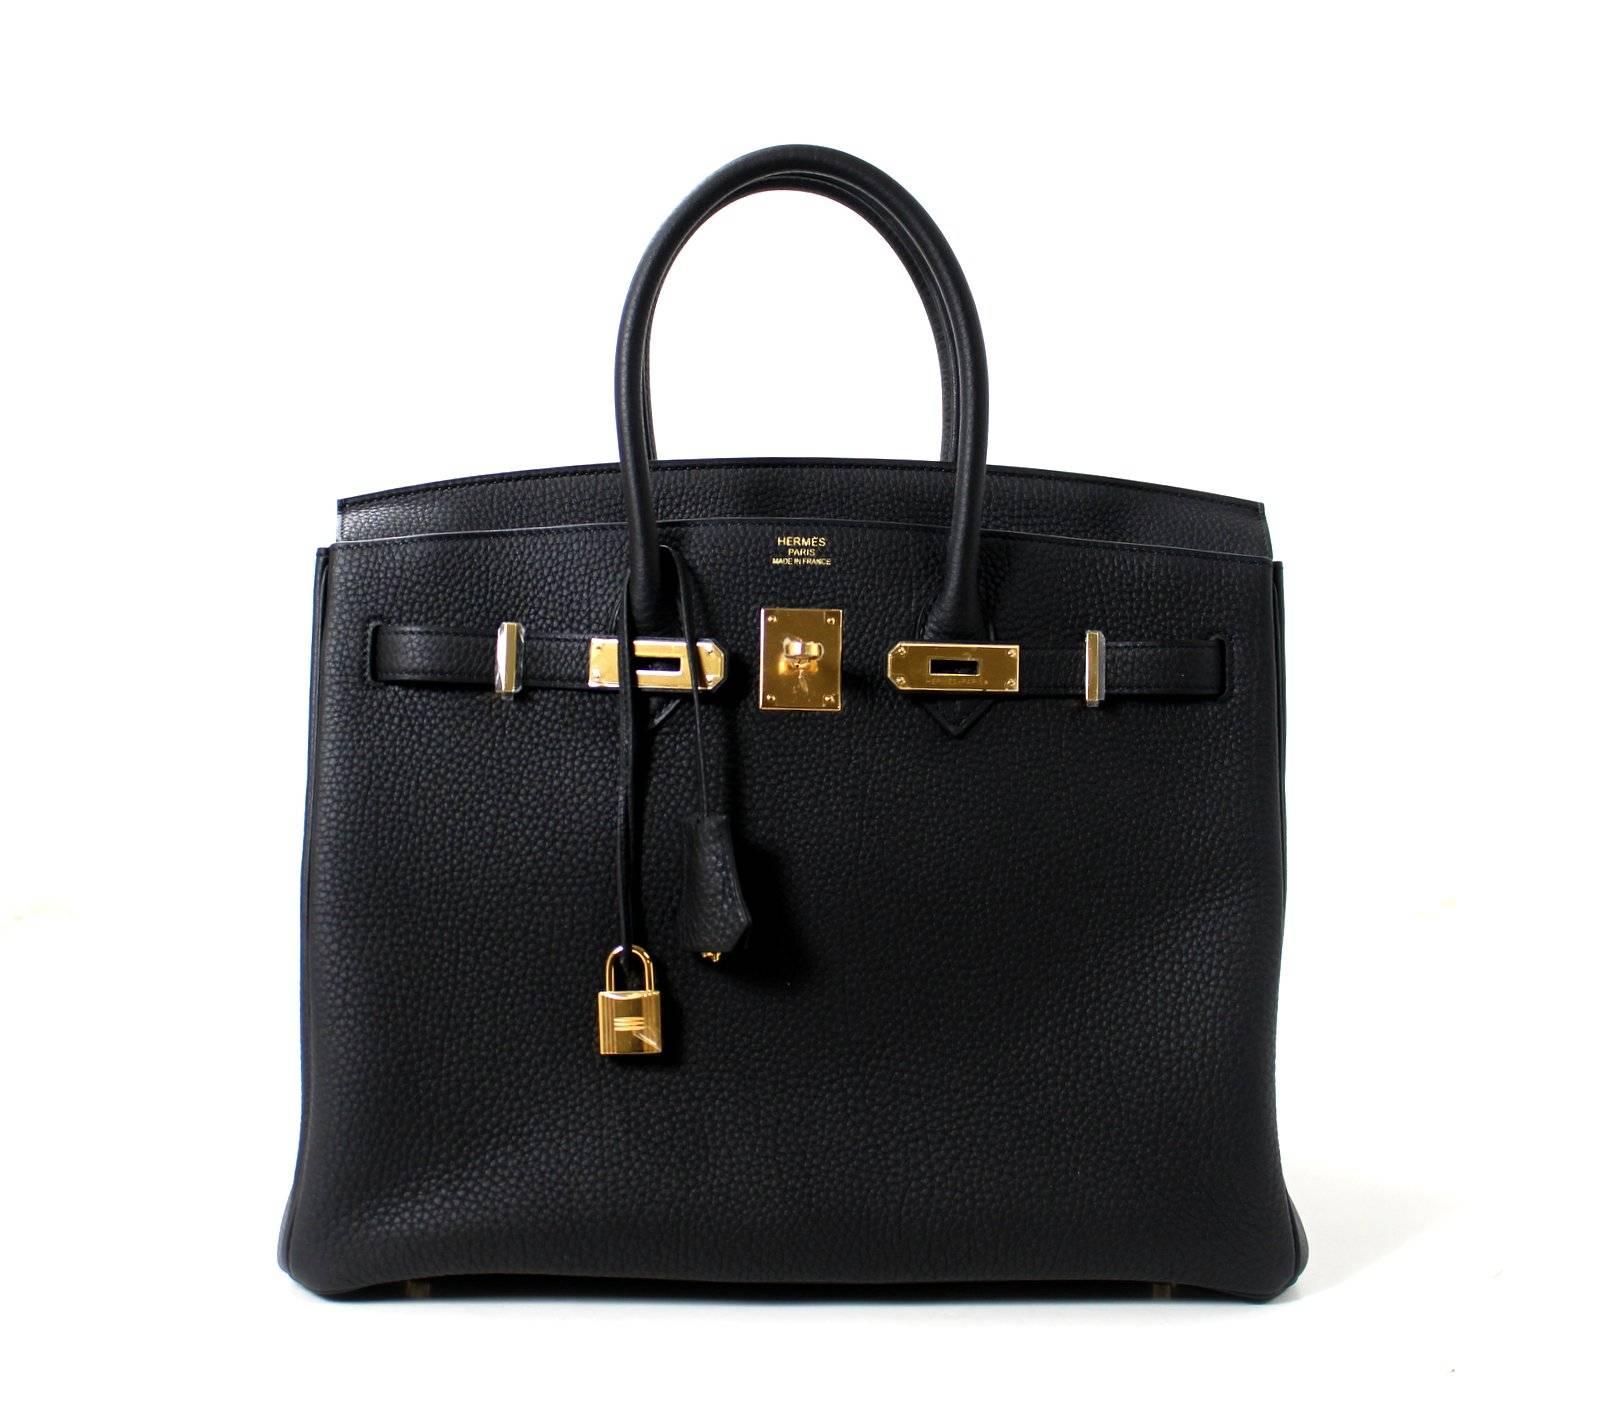 Hermes Black Birkin Bag- 35 cm, Togo Leather with Gold Hardware 1